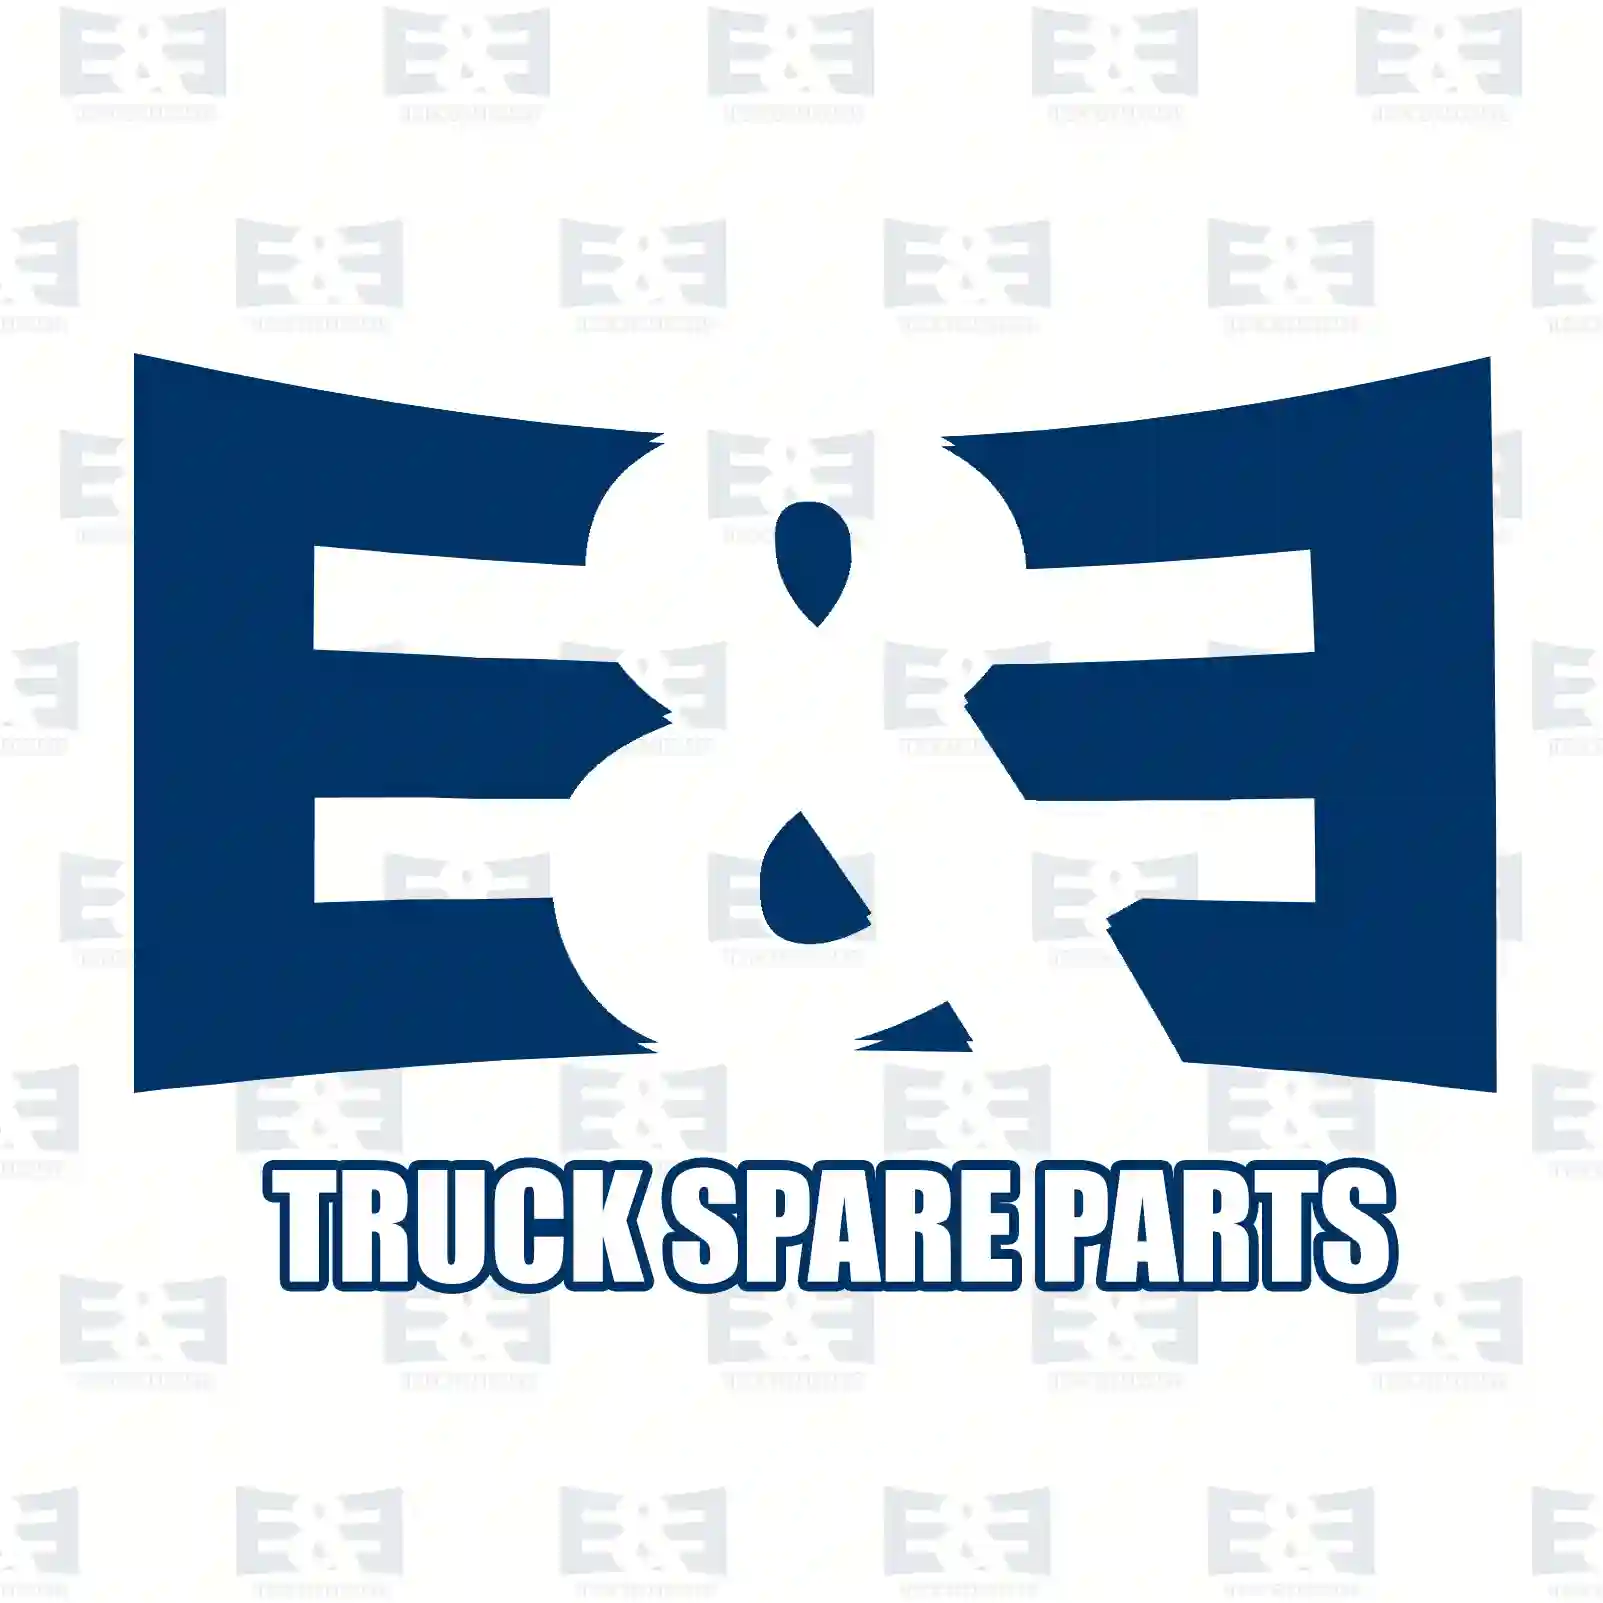 Compressor, 2E2296785, 51541006001, 5154 ||  2E2296785 E&E Truck Spare Parts | Truck Spare Parts, Auotomotive Spare Parts Compressor, 2E2296785, 51541006001, 5154 ||  2E2296785 E&E Truck Spare Parts | Truck Spare Parts, Auotomotive Spare Parts